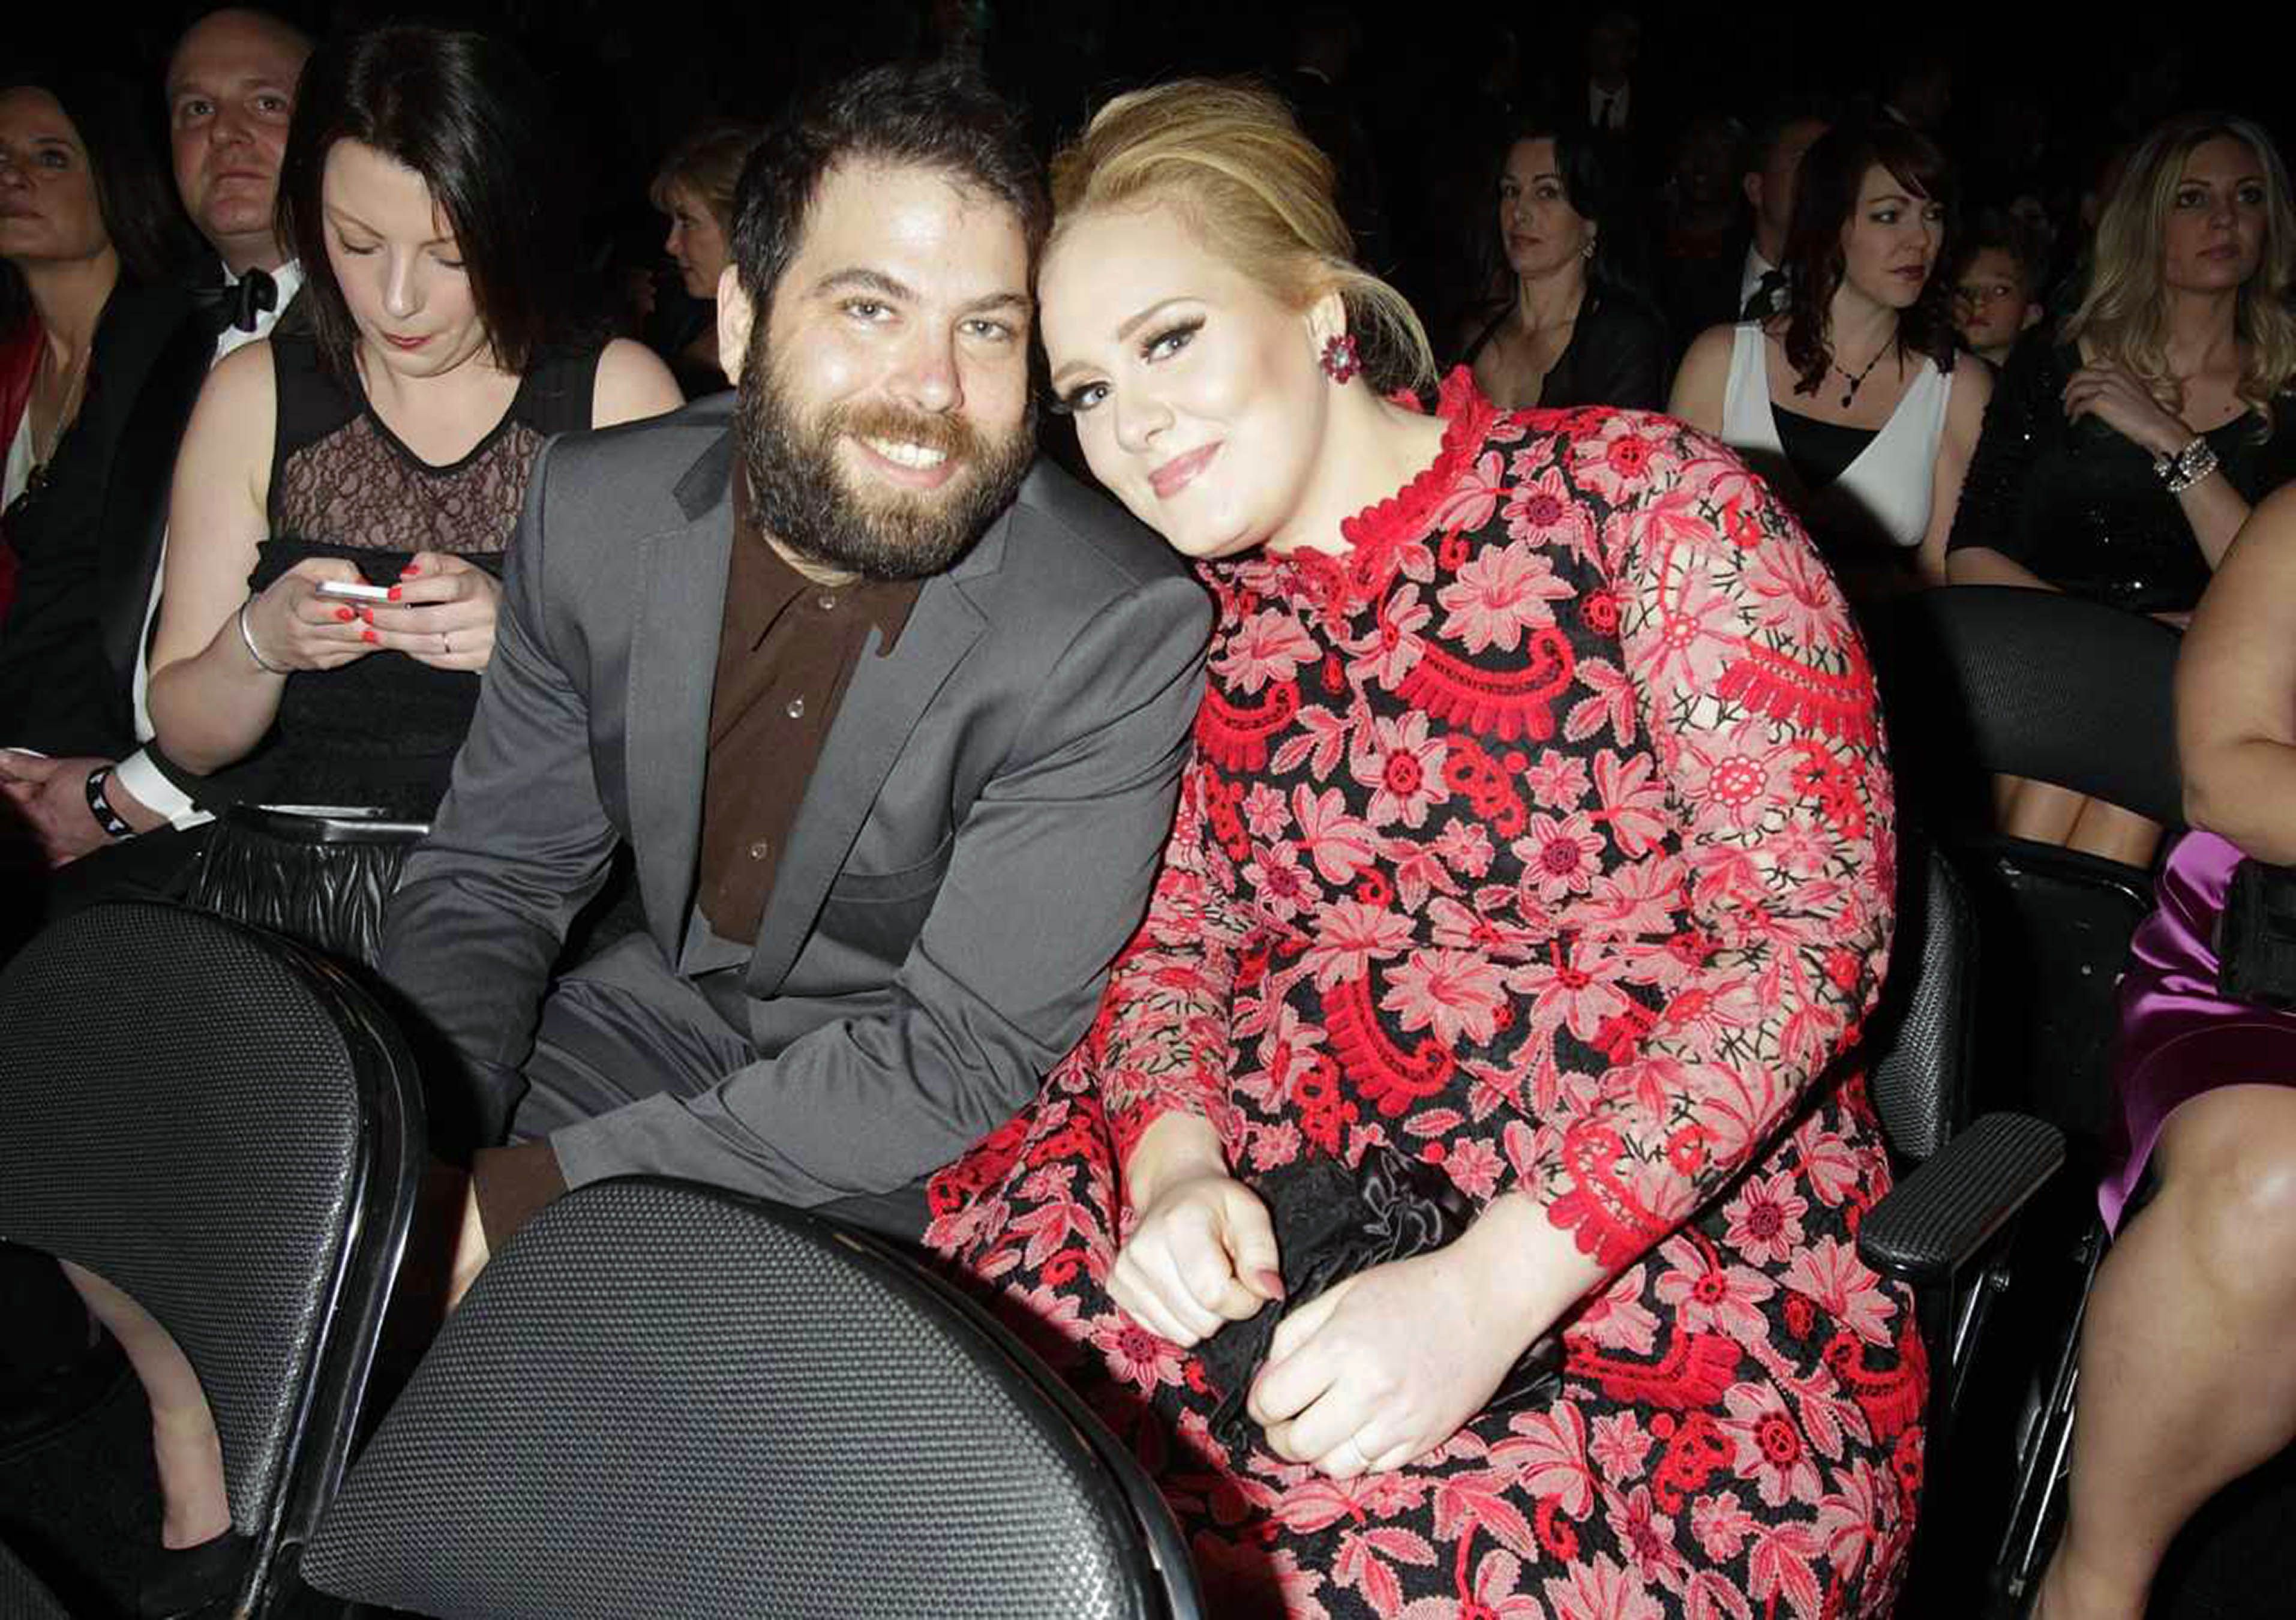 O sucesso de Adele causou o fracasso de seu primeiro casamento?